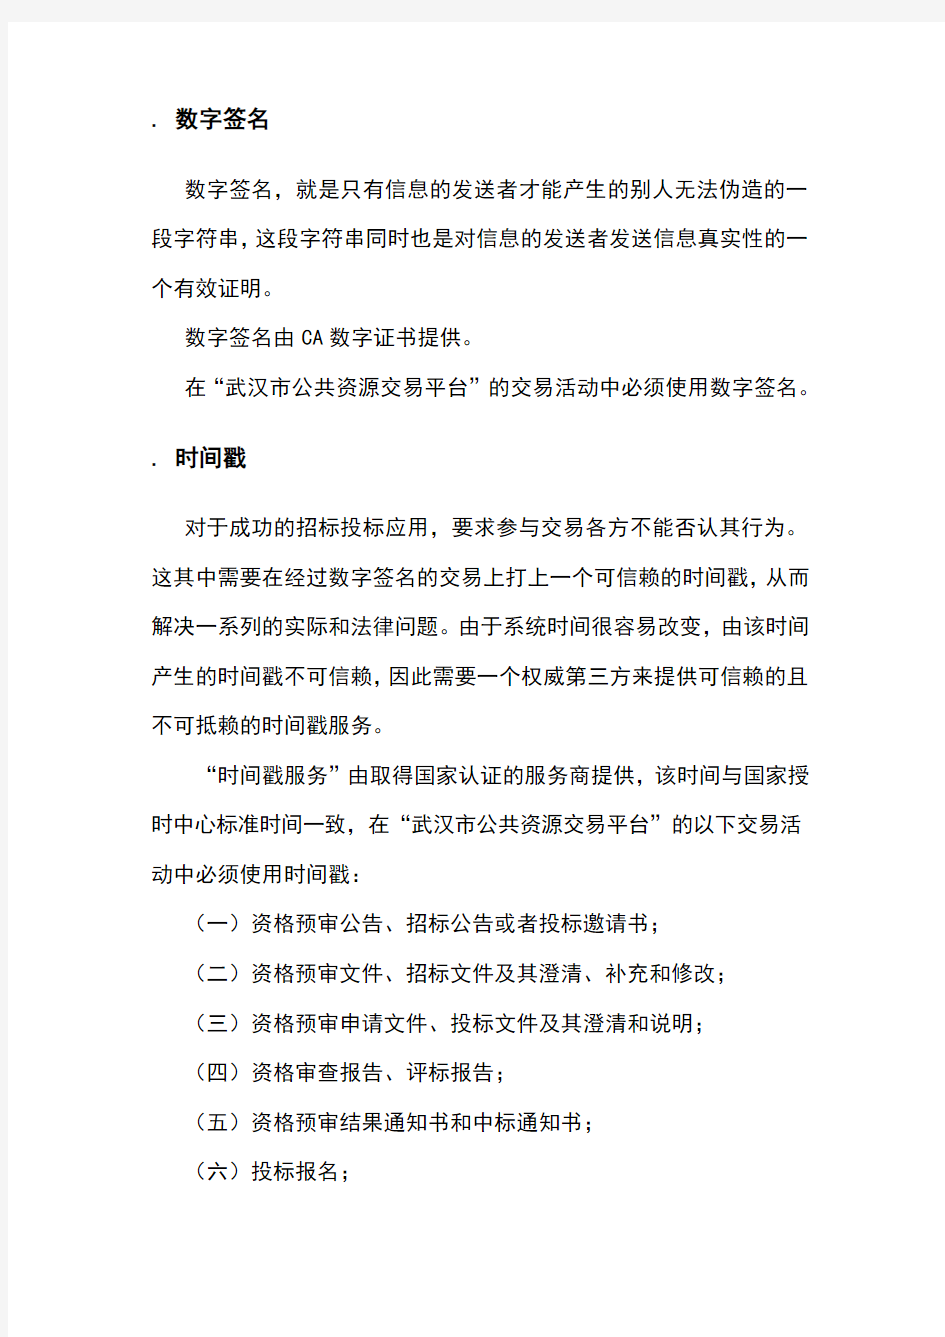 武汉公共资源交易平台交易人CA数字证书及电子签章办理流程